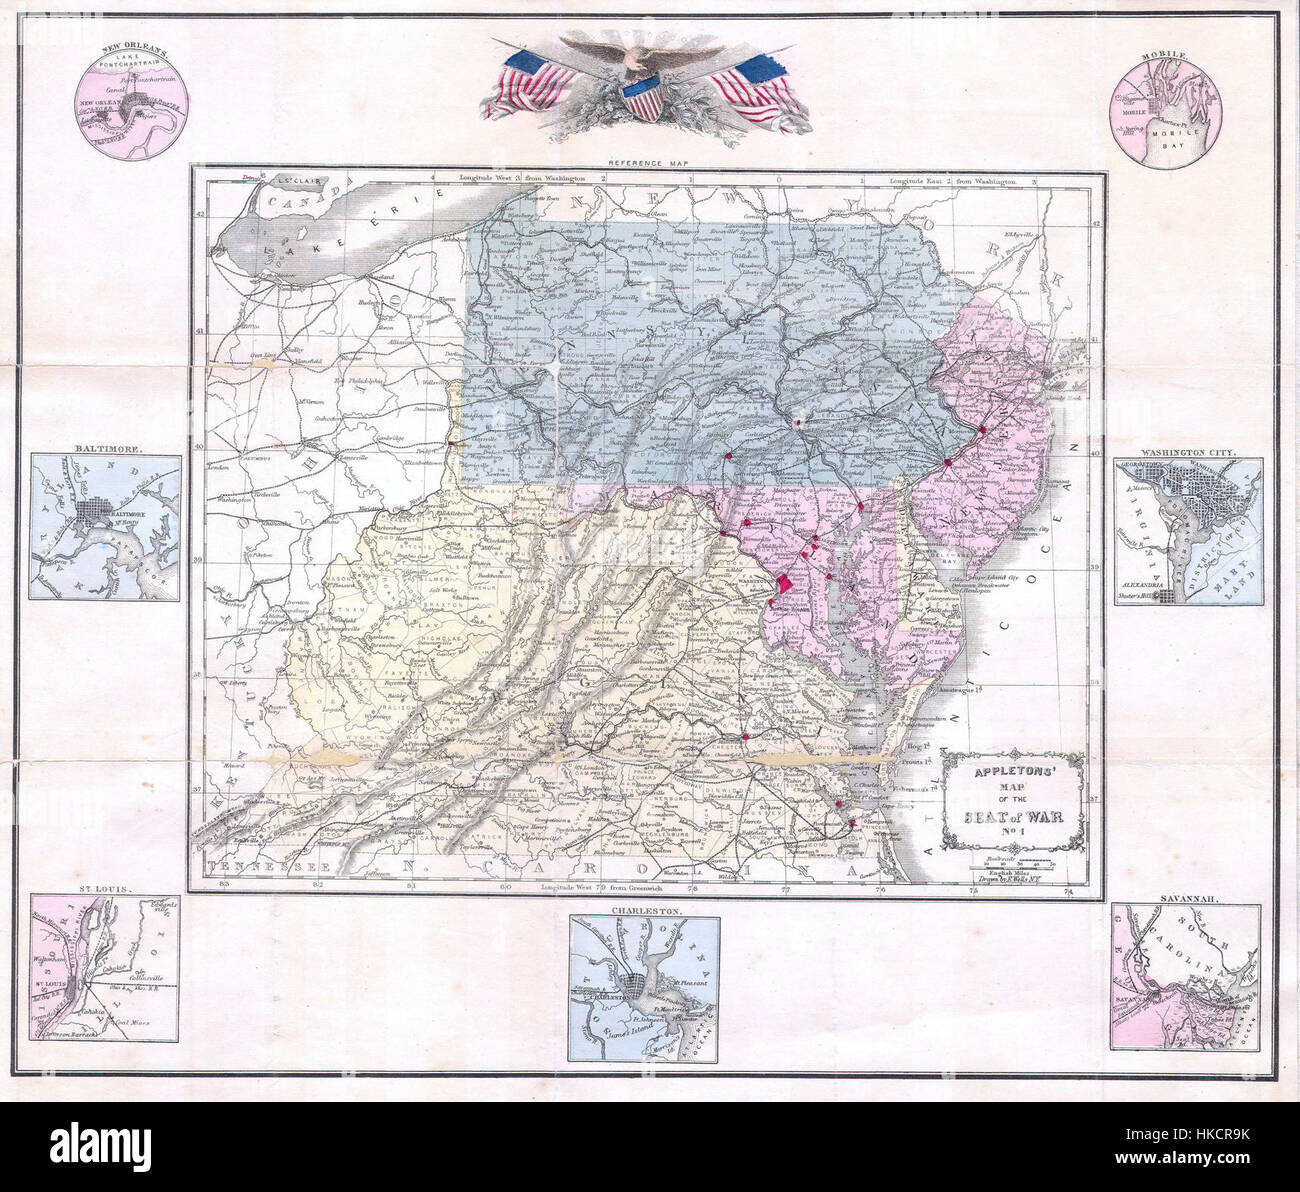 1861 Appleton Mapa del asiento de la Guerra Civil (Pennsylvania, Virginia, Maryland, Carolina del Norte Geographicus SeatofCivilWar appleton 1861 Foto de stock